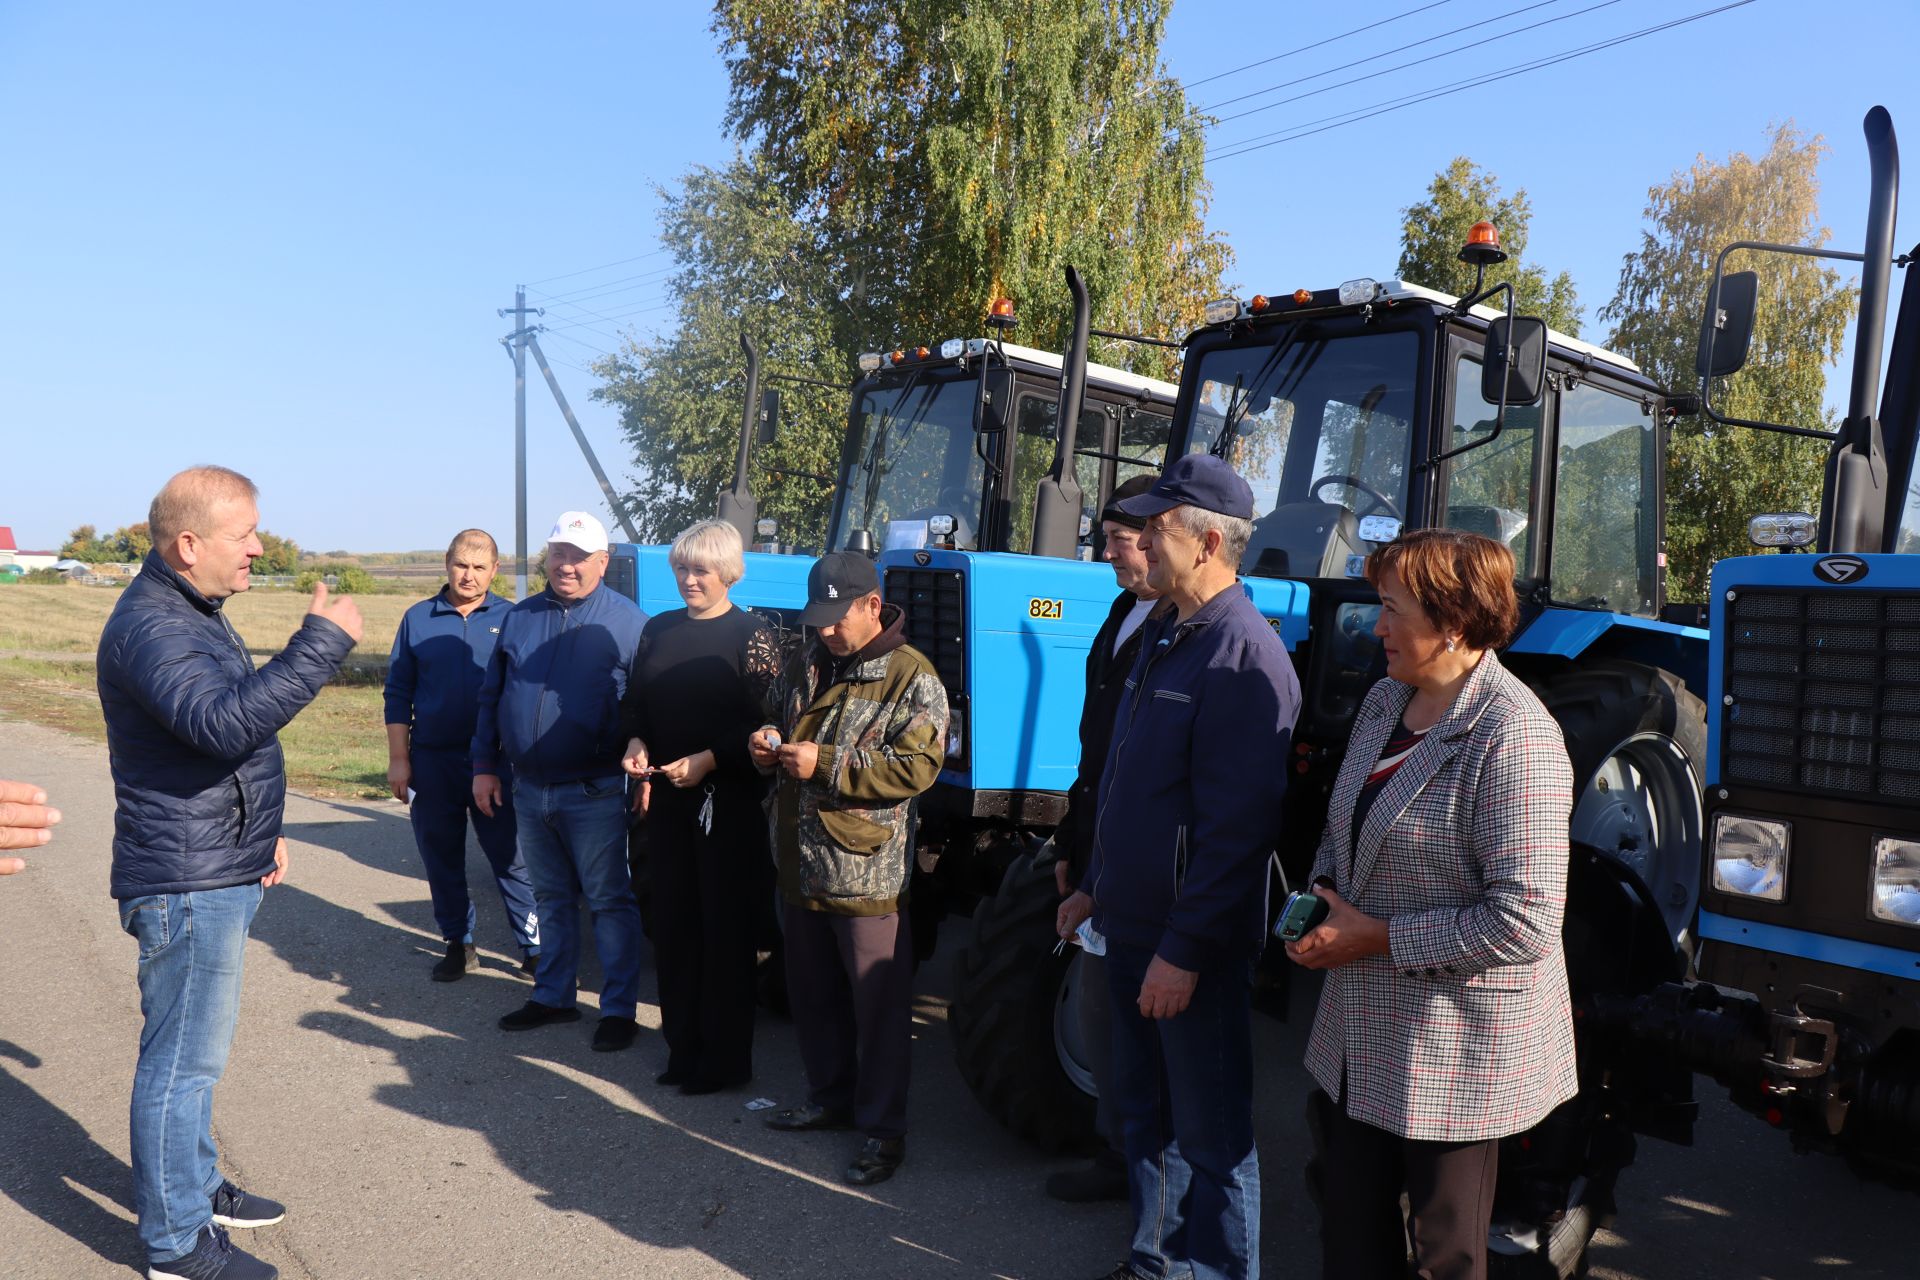 Глава Дрожжановского района РТ Марат Гафаров вручил ключи от новых тракторов главам сельских поселений